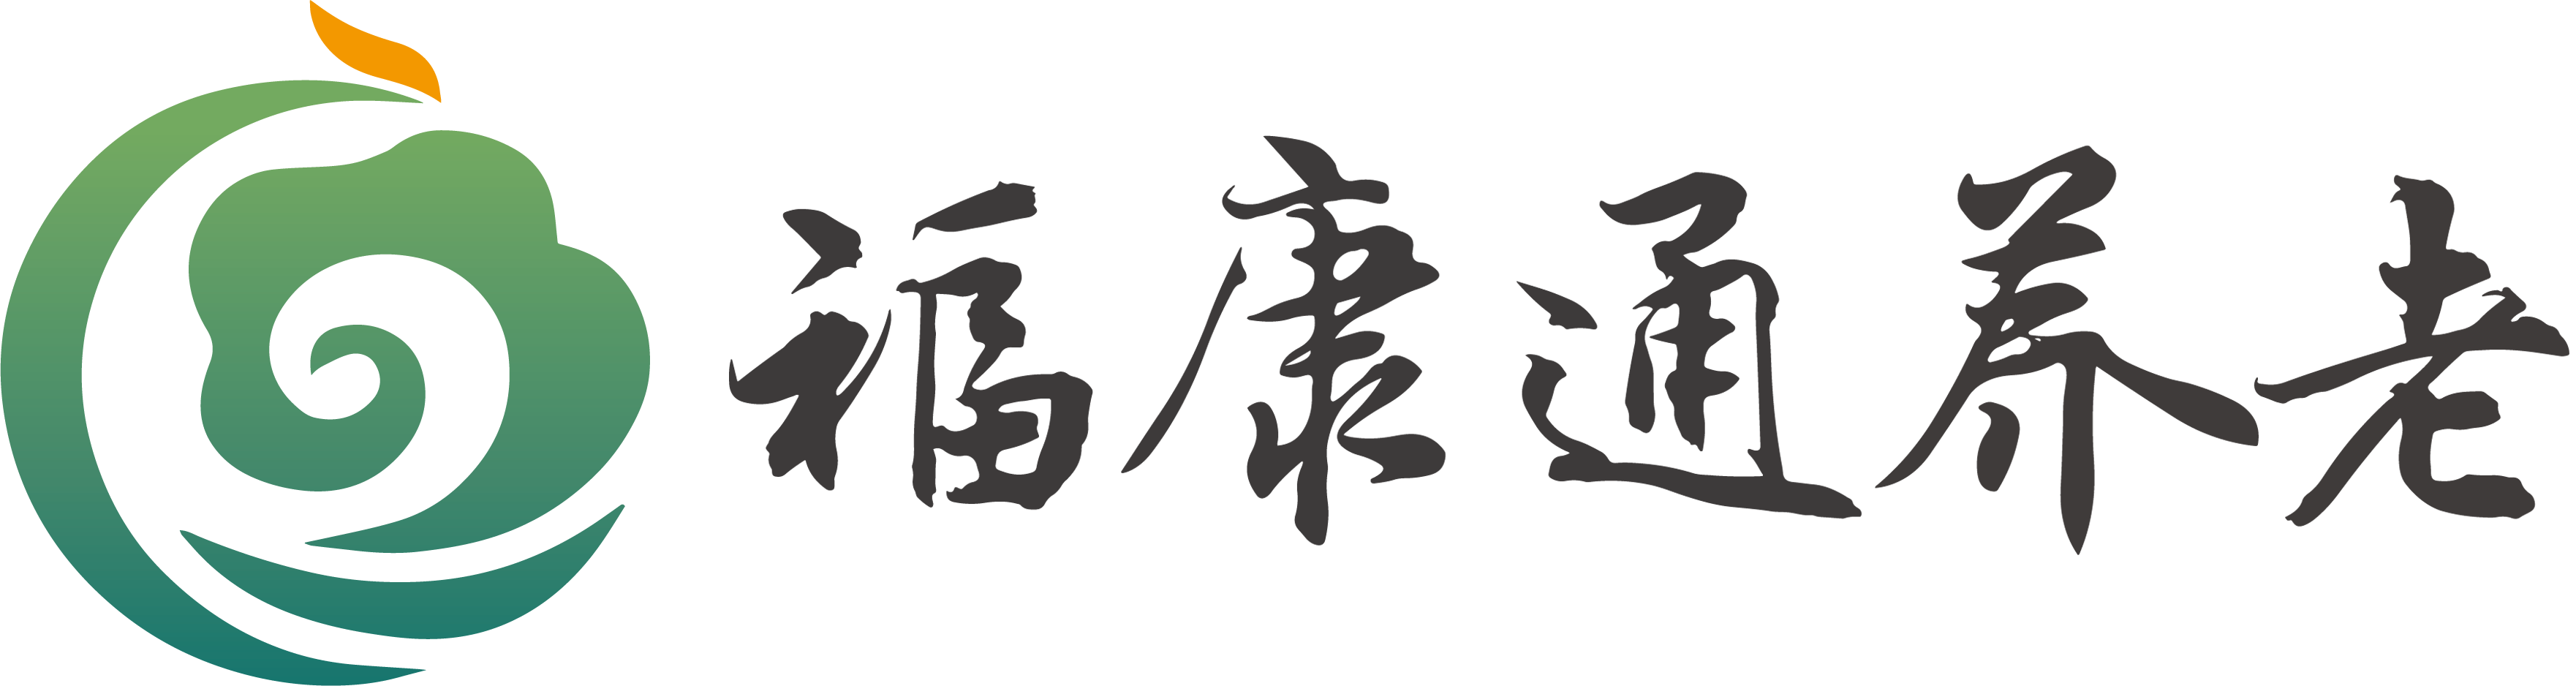 南京福康通健康产业有限公司顺利通过CMMI3级认证.png